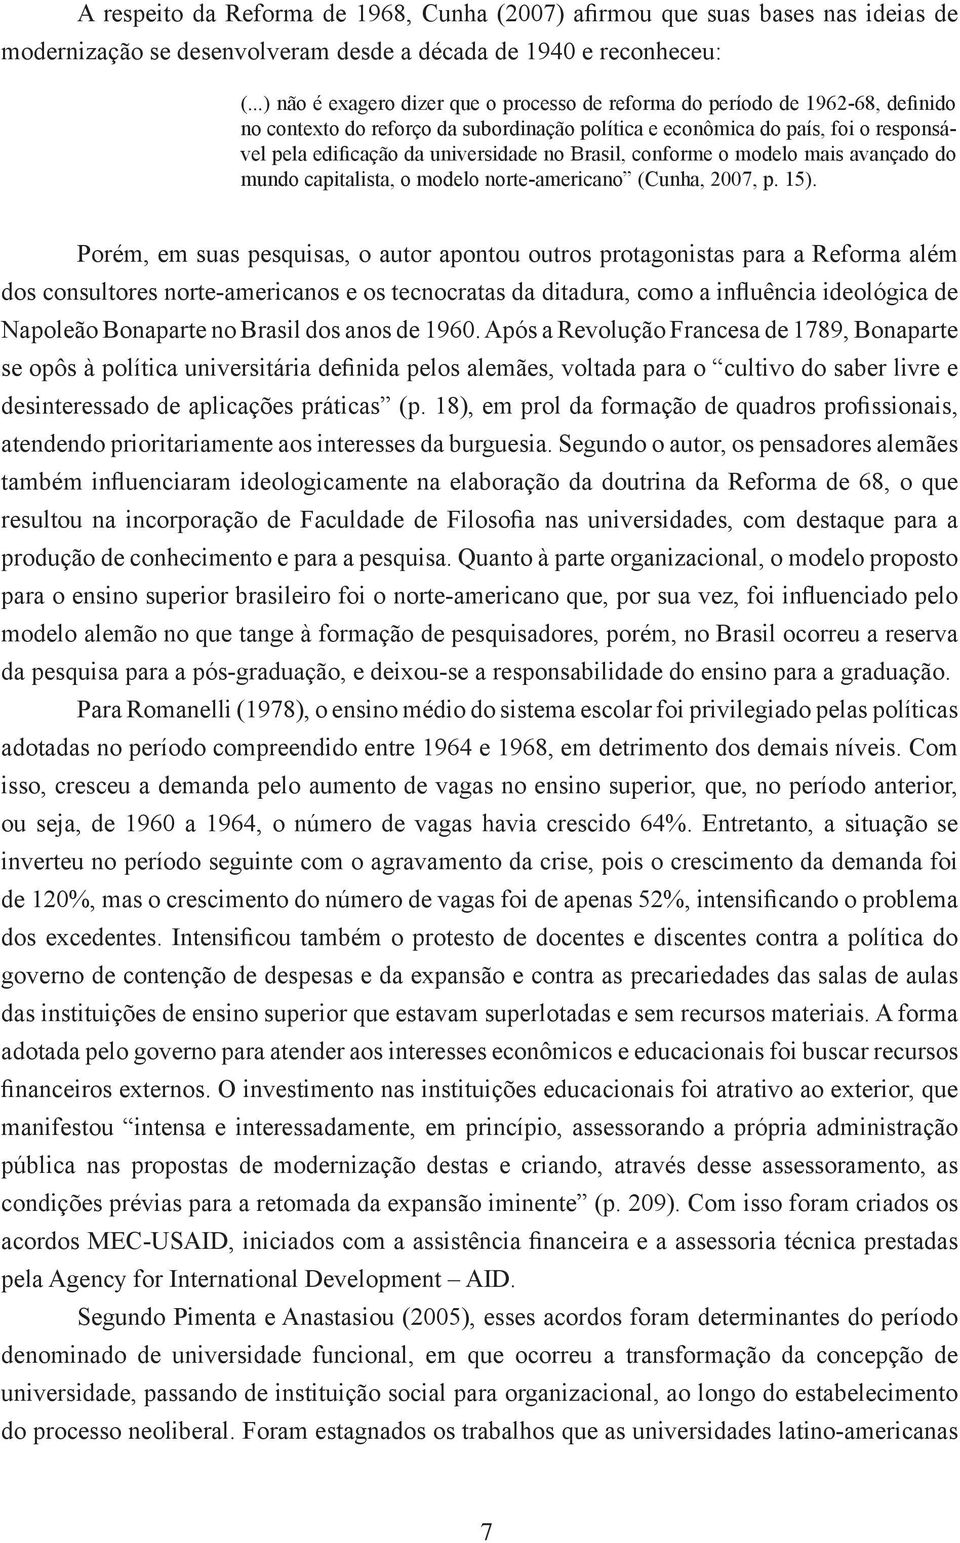 universidade no Brasil, conforme o modelo mais avançado do mundo capitalista, o modelo norte-americano (Cunha, 2007, p. 15).